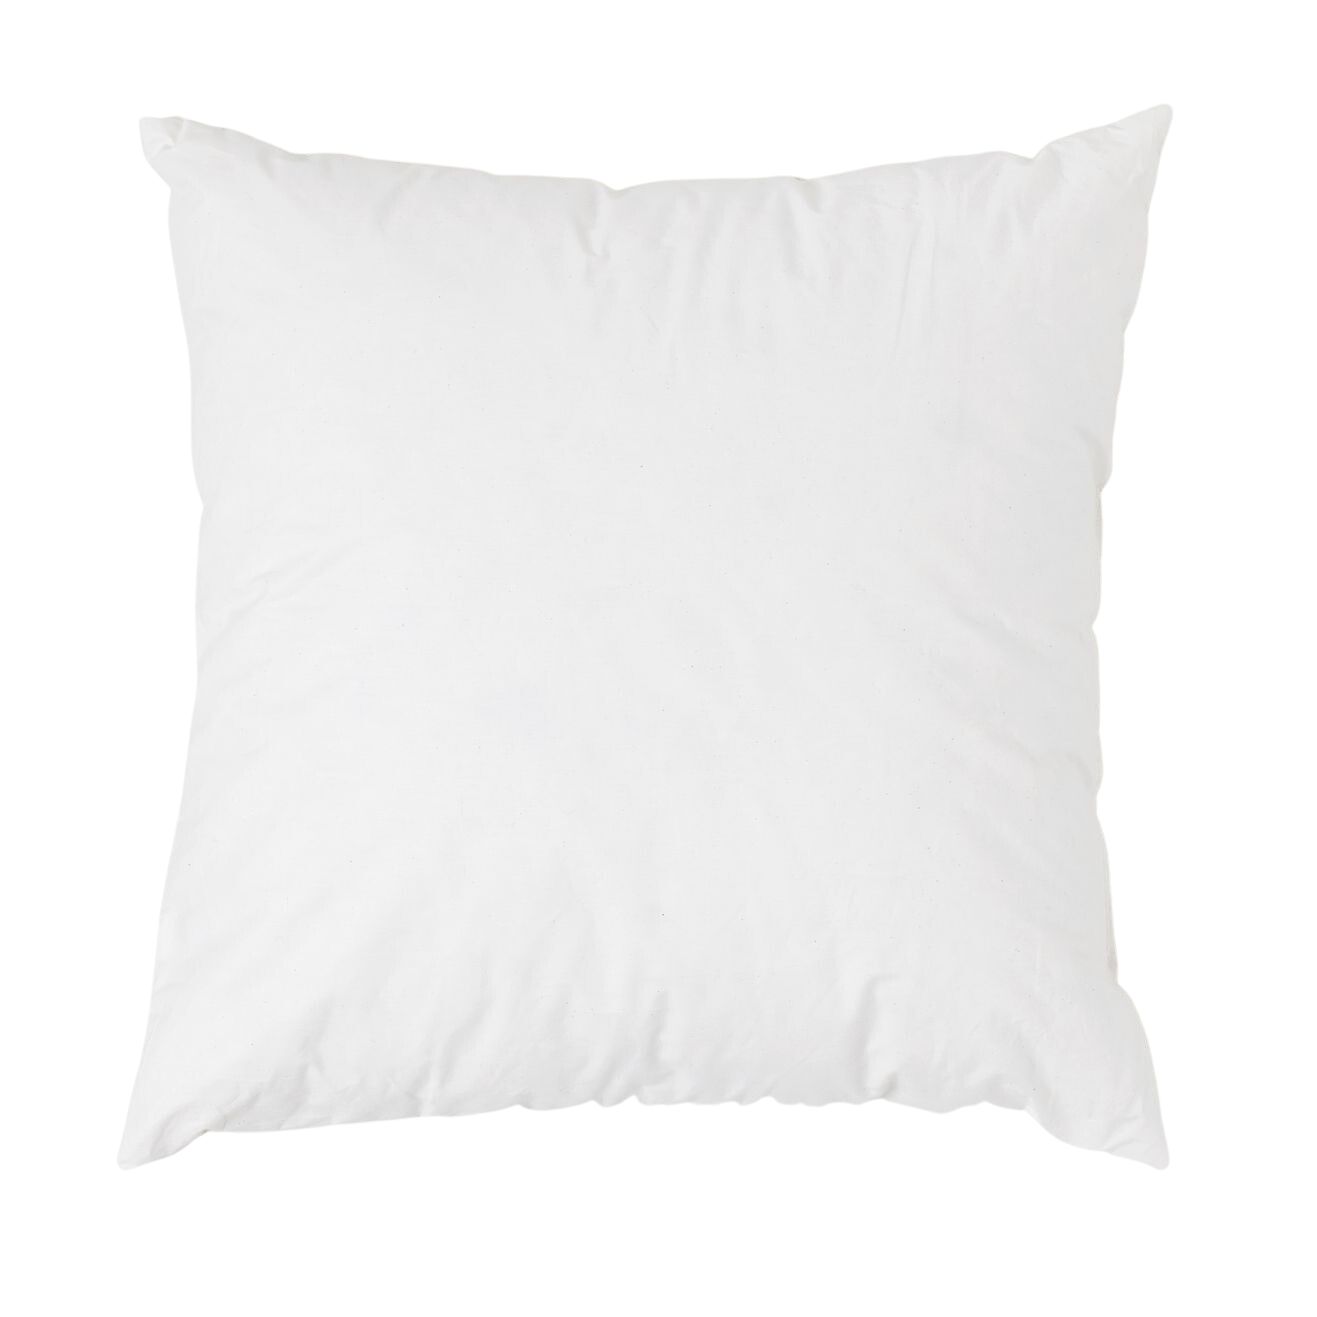 Form & Refine Inner Cushion For Aymara, 52x52 Cm